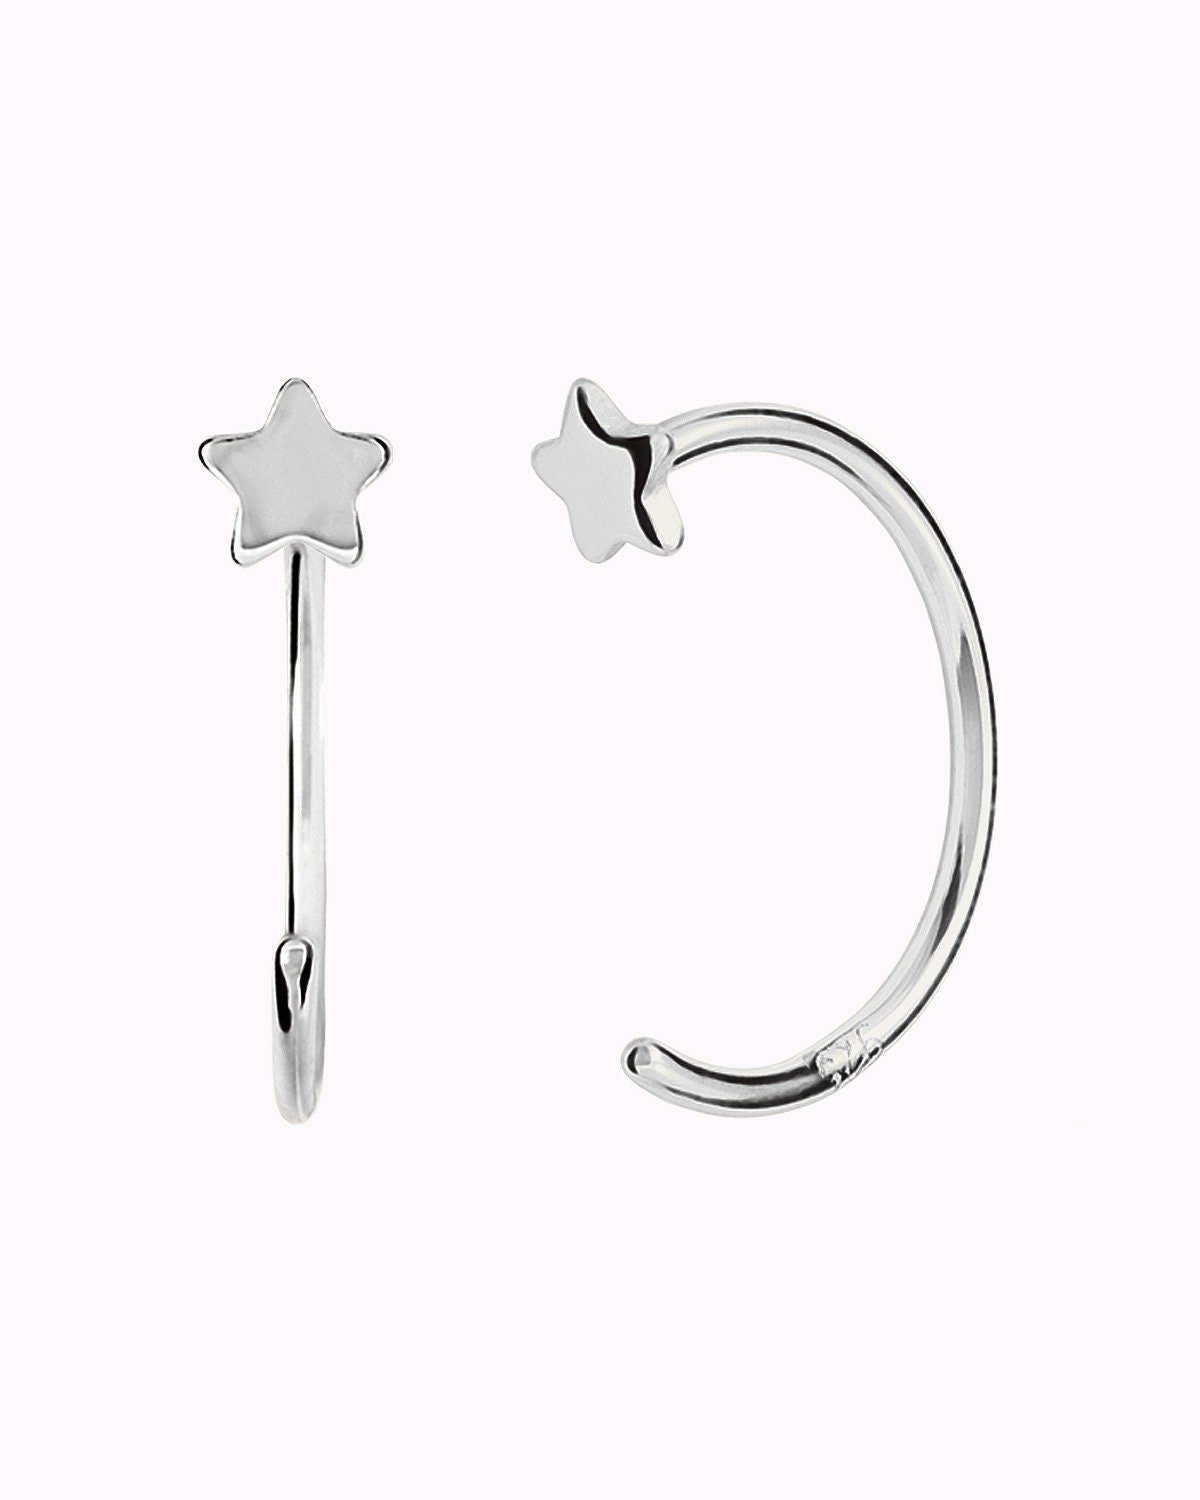 Small Swing Latch Titanium Hoop Earrings by Landauer